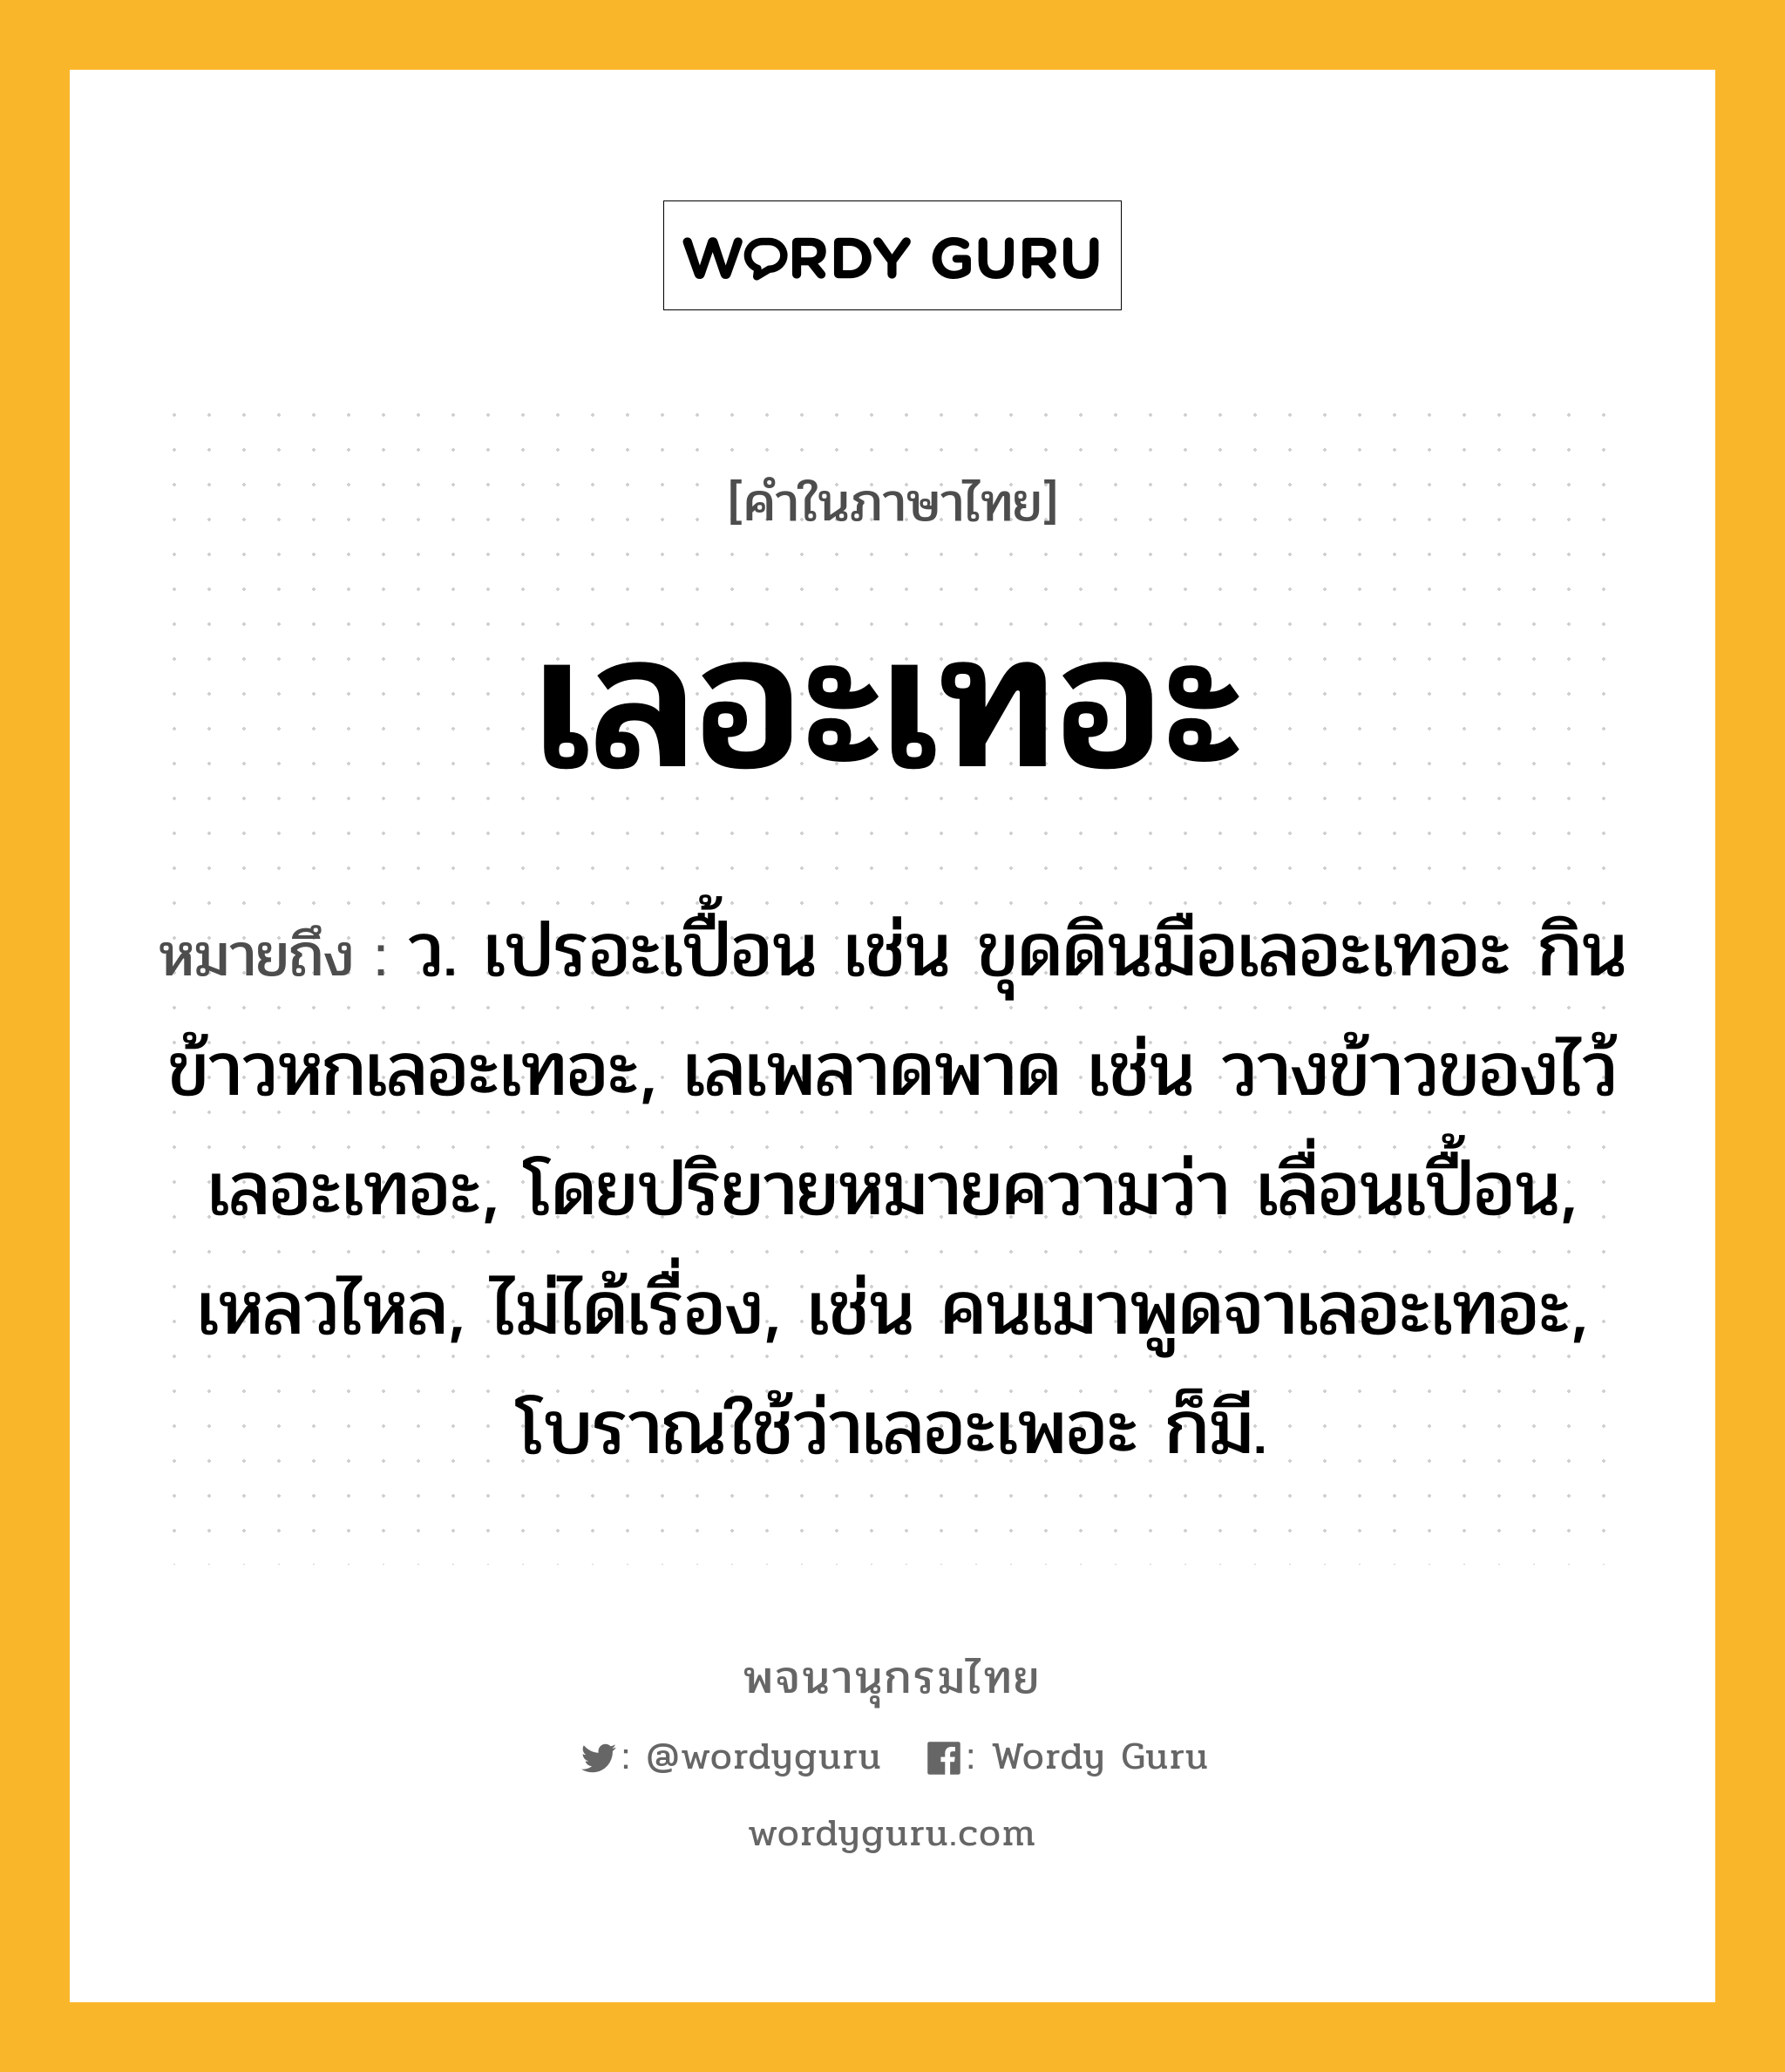 เลอะเทอะ หมายถึงอะไร?, คำในภาษาไทย เลอะเทอะ หมายถึง ว. เปรอะเปื้อน เช่น ขุดดินมือเลอะเทอะ กินข้าวหกเลอะเทอะ, เลเพลาดพาด เช่น วางข้าวของไว้เลอะเทอะ, โดยปริยายหมายความว่า เลื่อนเปื้อน, เหลวไหล, ไม่ได้เรื่อง, เช่น คนเมาพูดจาเลอะเทอะ, โบราณใช้ว่าเลอะเพอะ ก็มี.